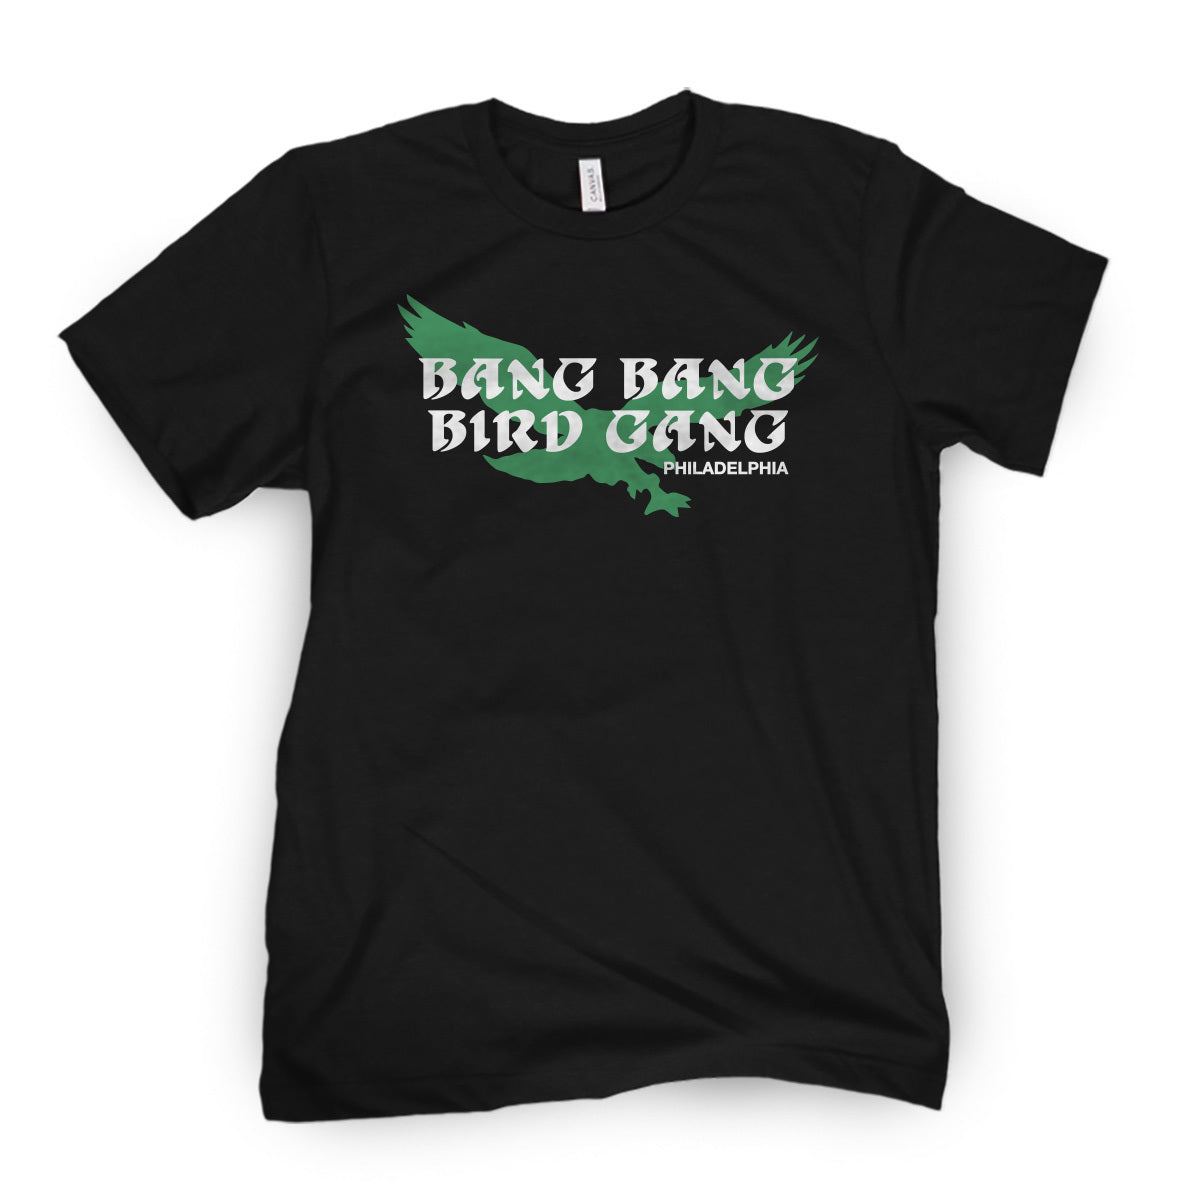 eagles bird gang shirt